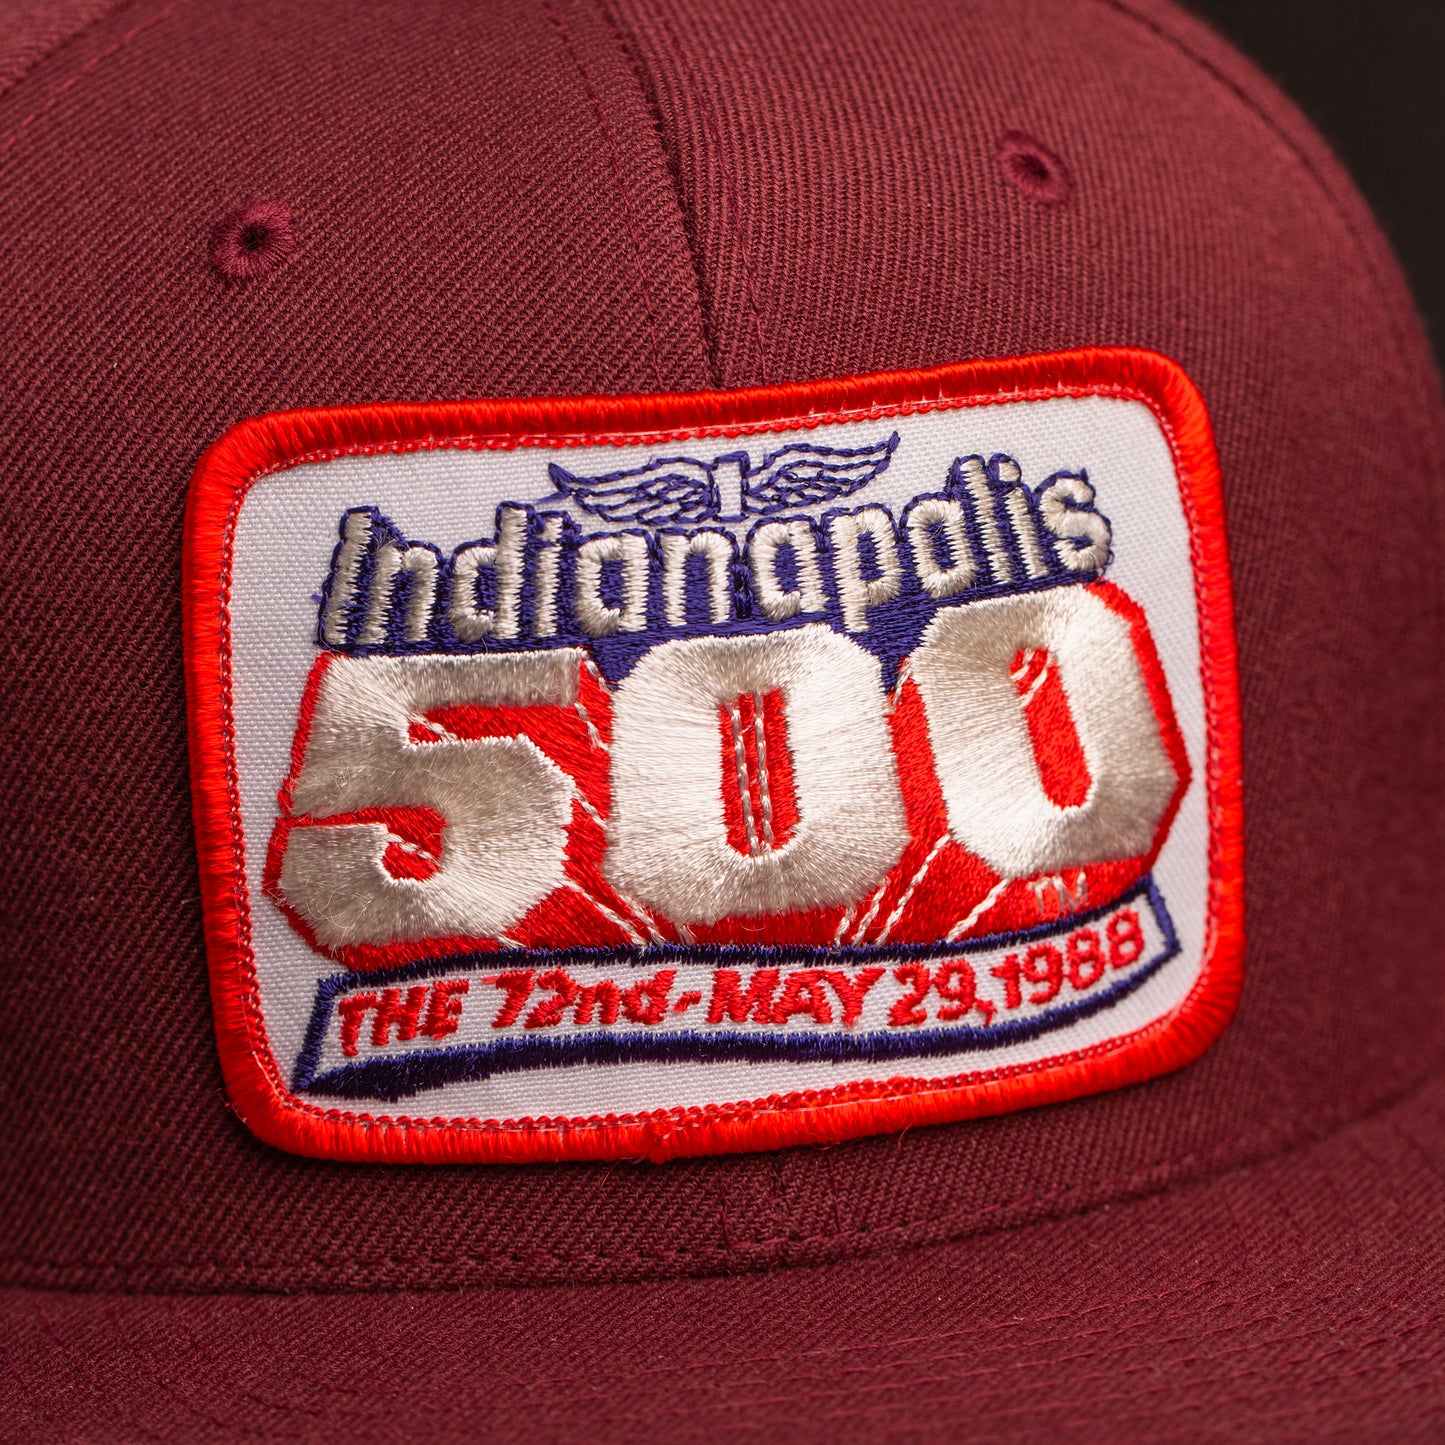 72nd Indianapolis 500 May 1988